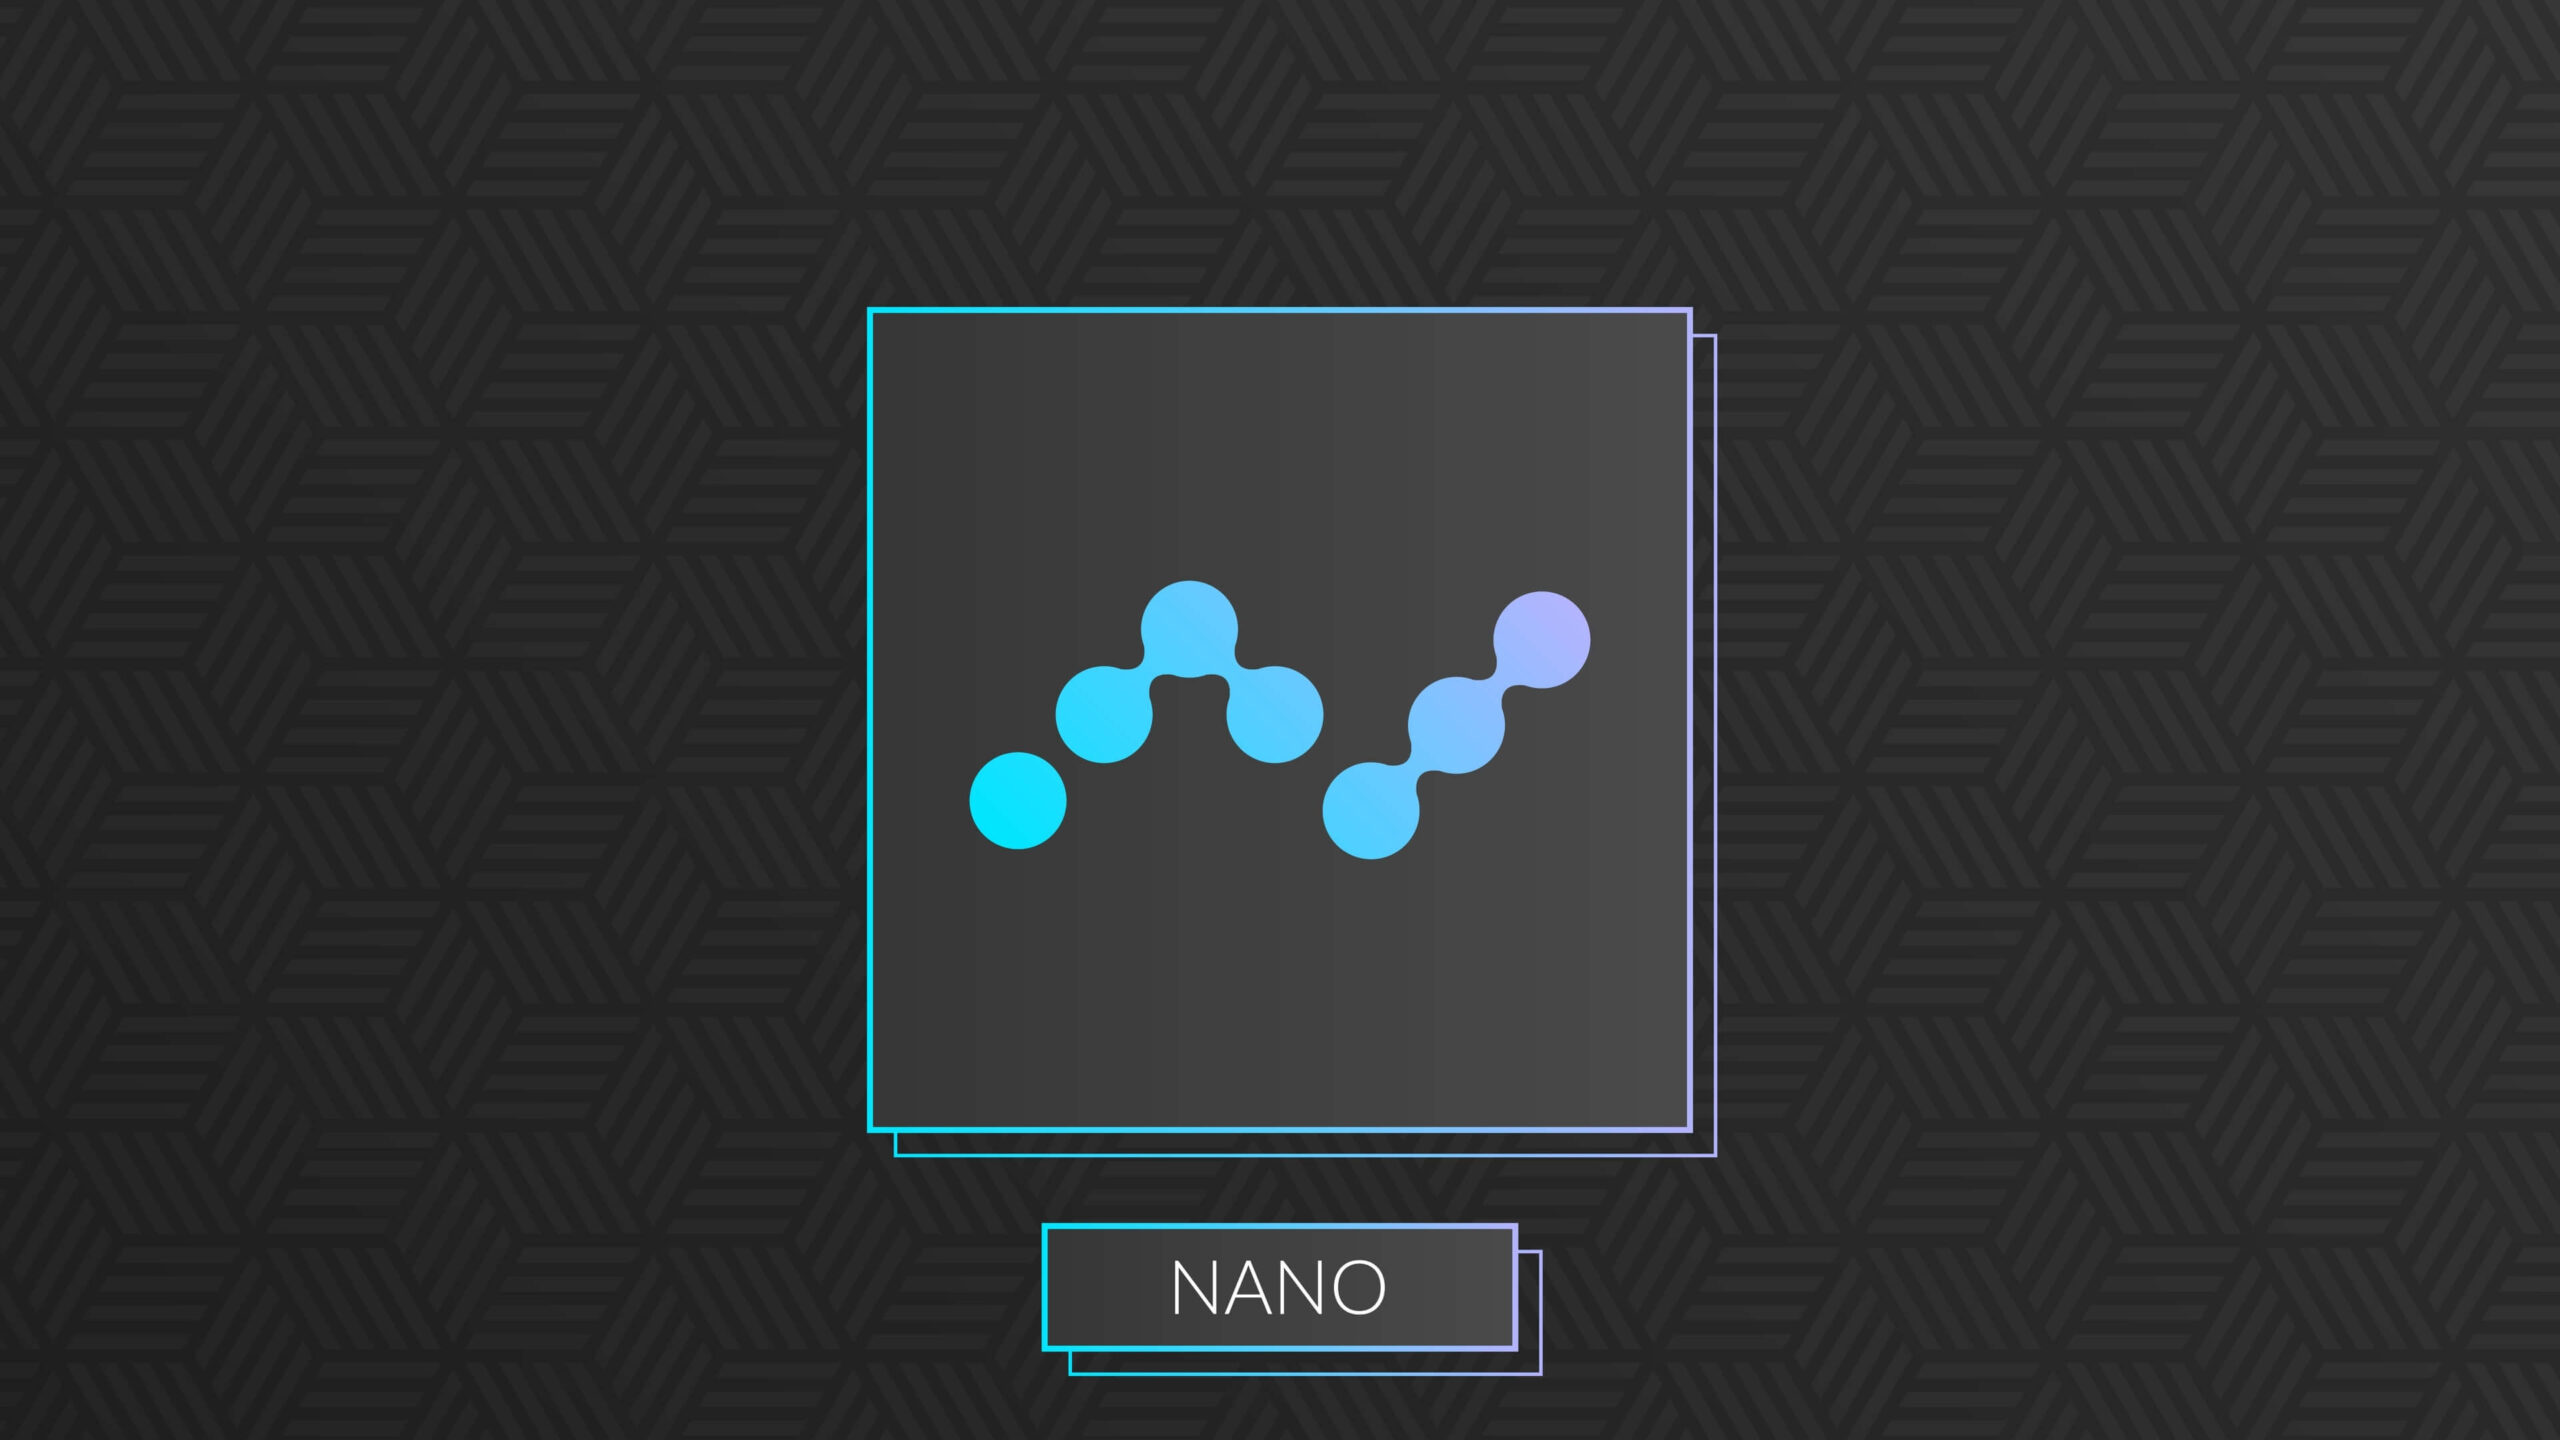 Nano (XNO) illustration.